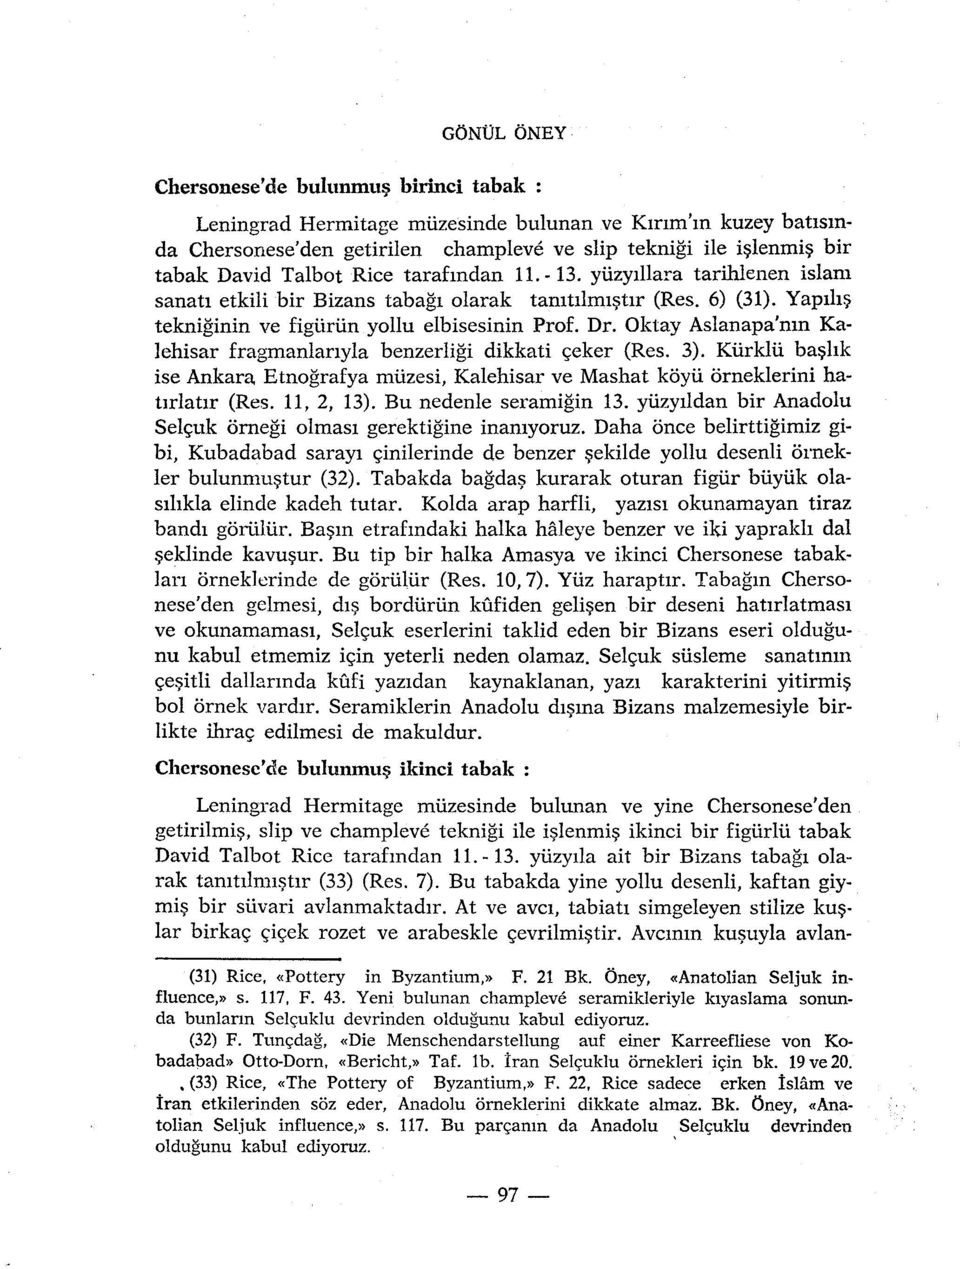 Oktay Aslanapa'mn Kalehisar fragmanlariyla benzerligi dikkati çeker (Res. 3). Kurklu bashk ise Ankara Etnografya miizesi, Kalehisar ve Mashat kôyii orneklerini hatirlatir (Res. 11, 2, 13).